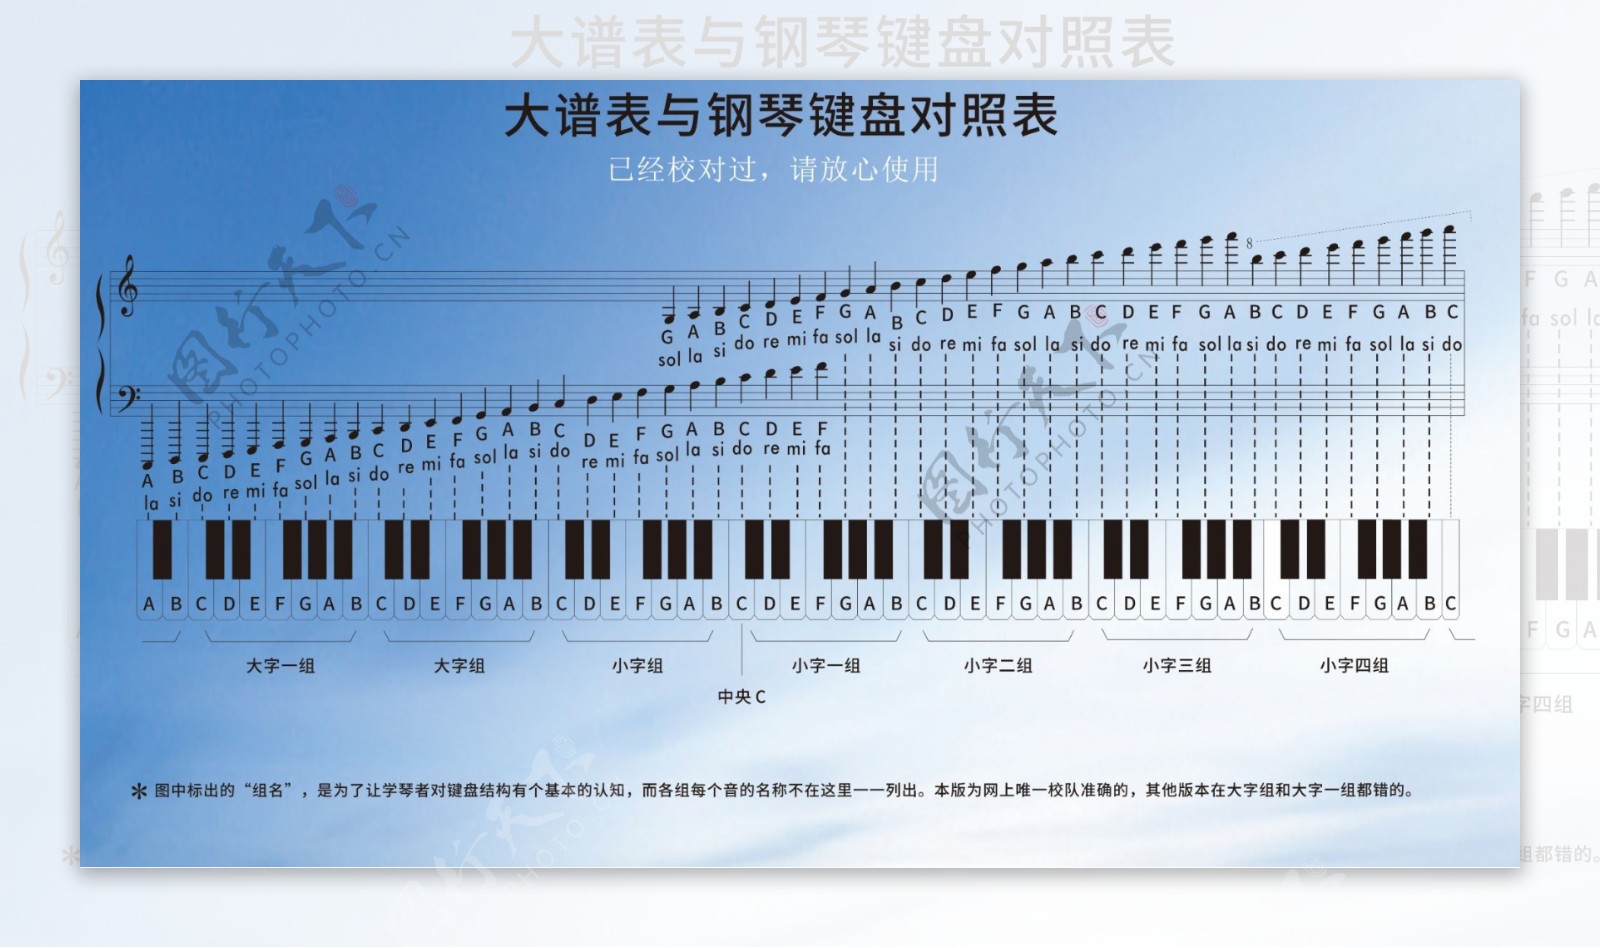 大谱表表与钢琴键盘对照表正确版